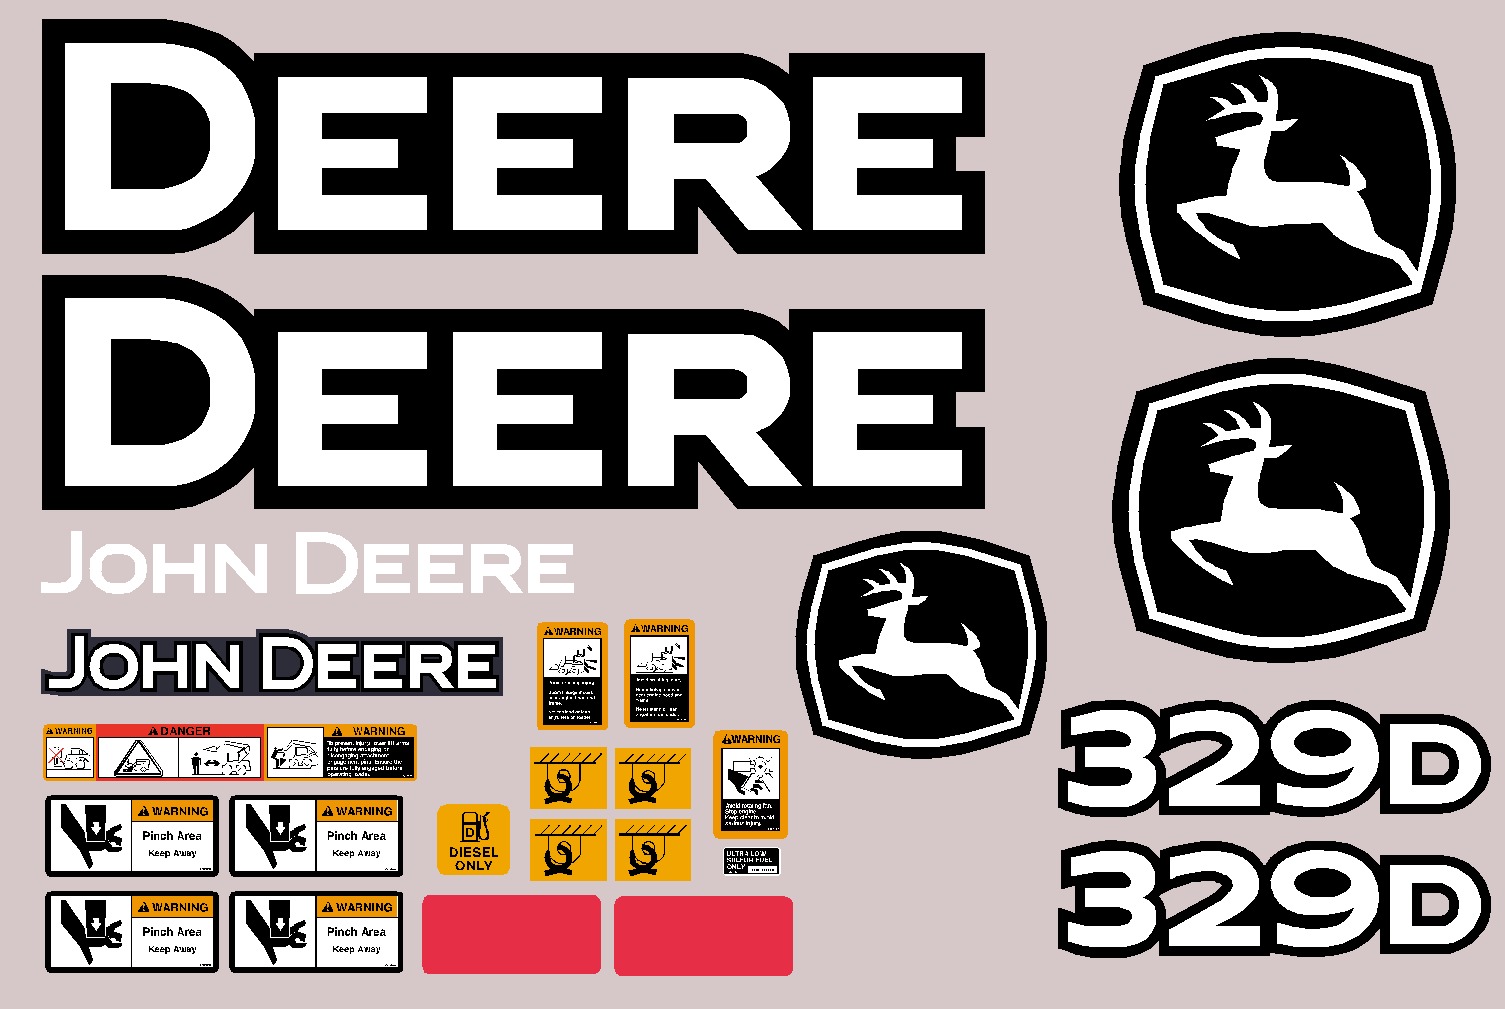 Deere Skid Steer Loaders 329D Decal Packages